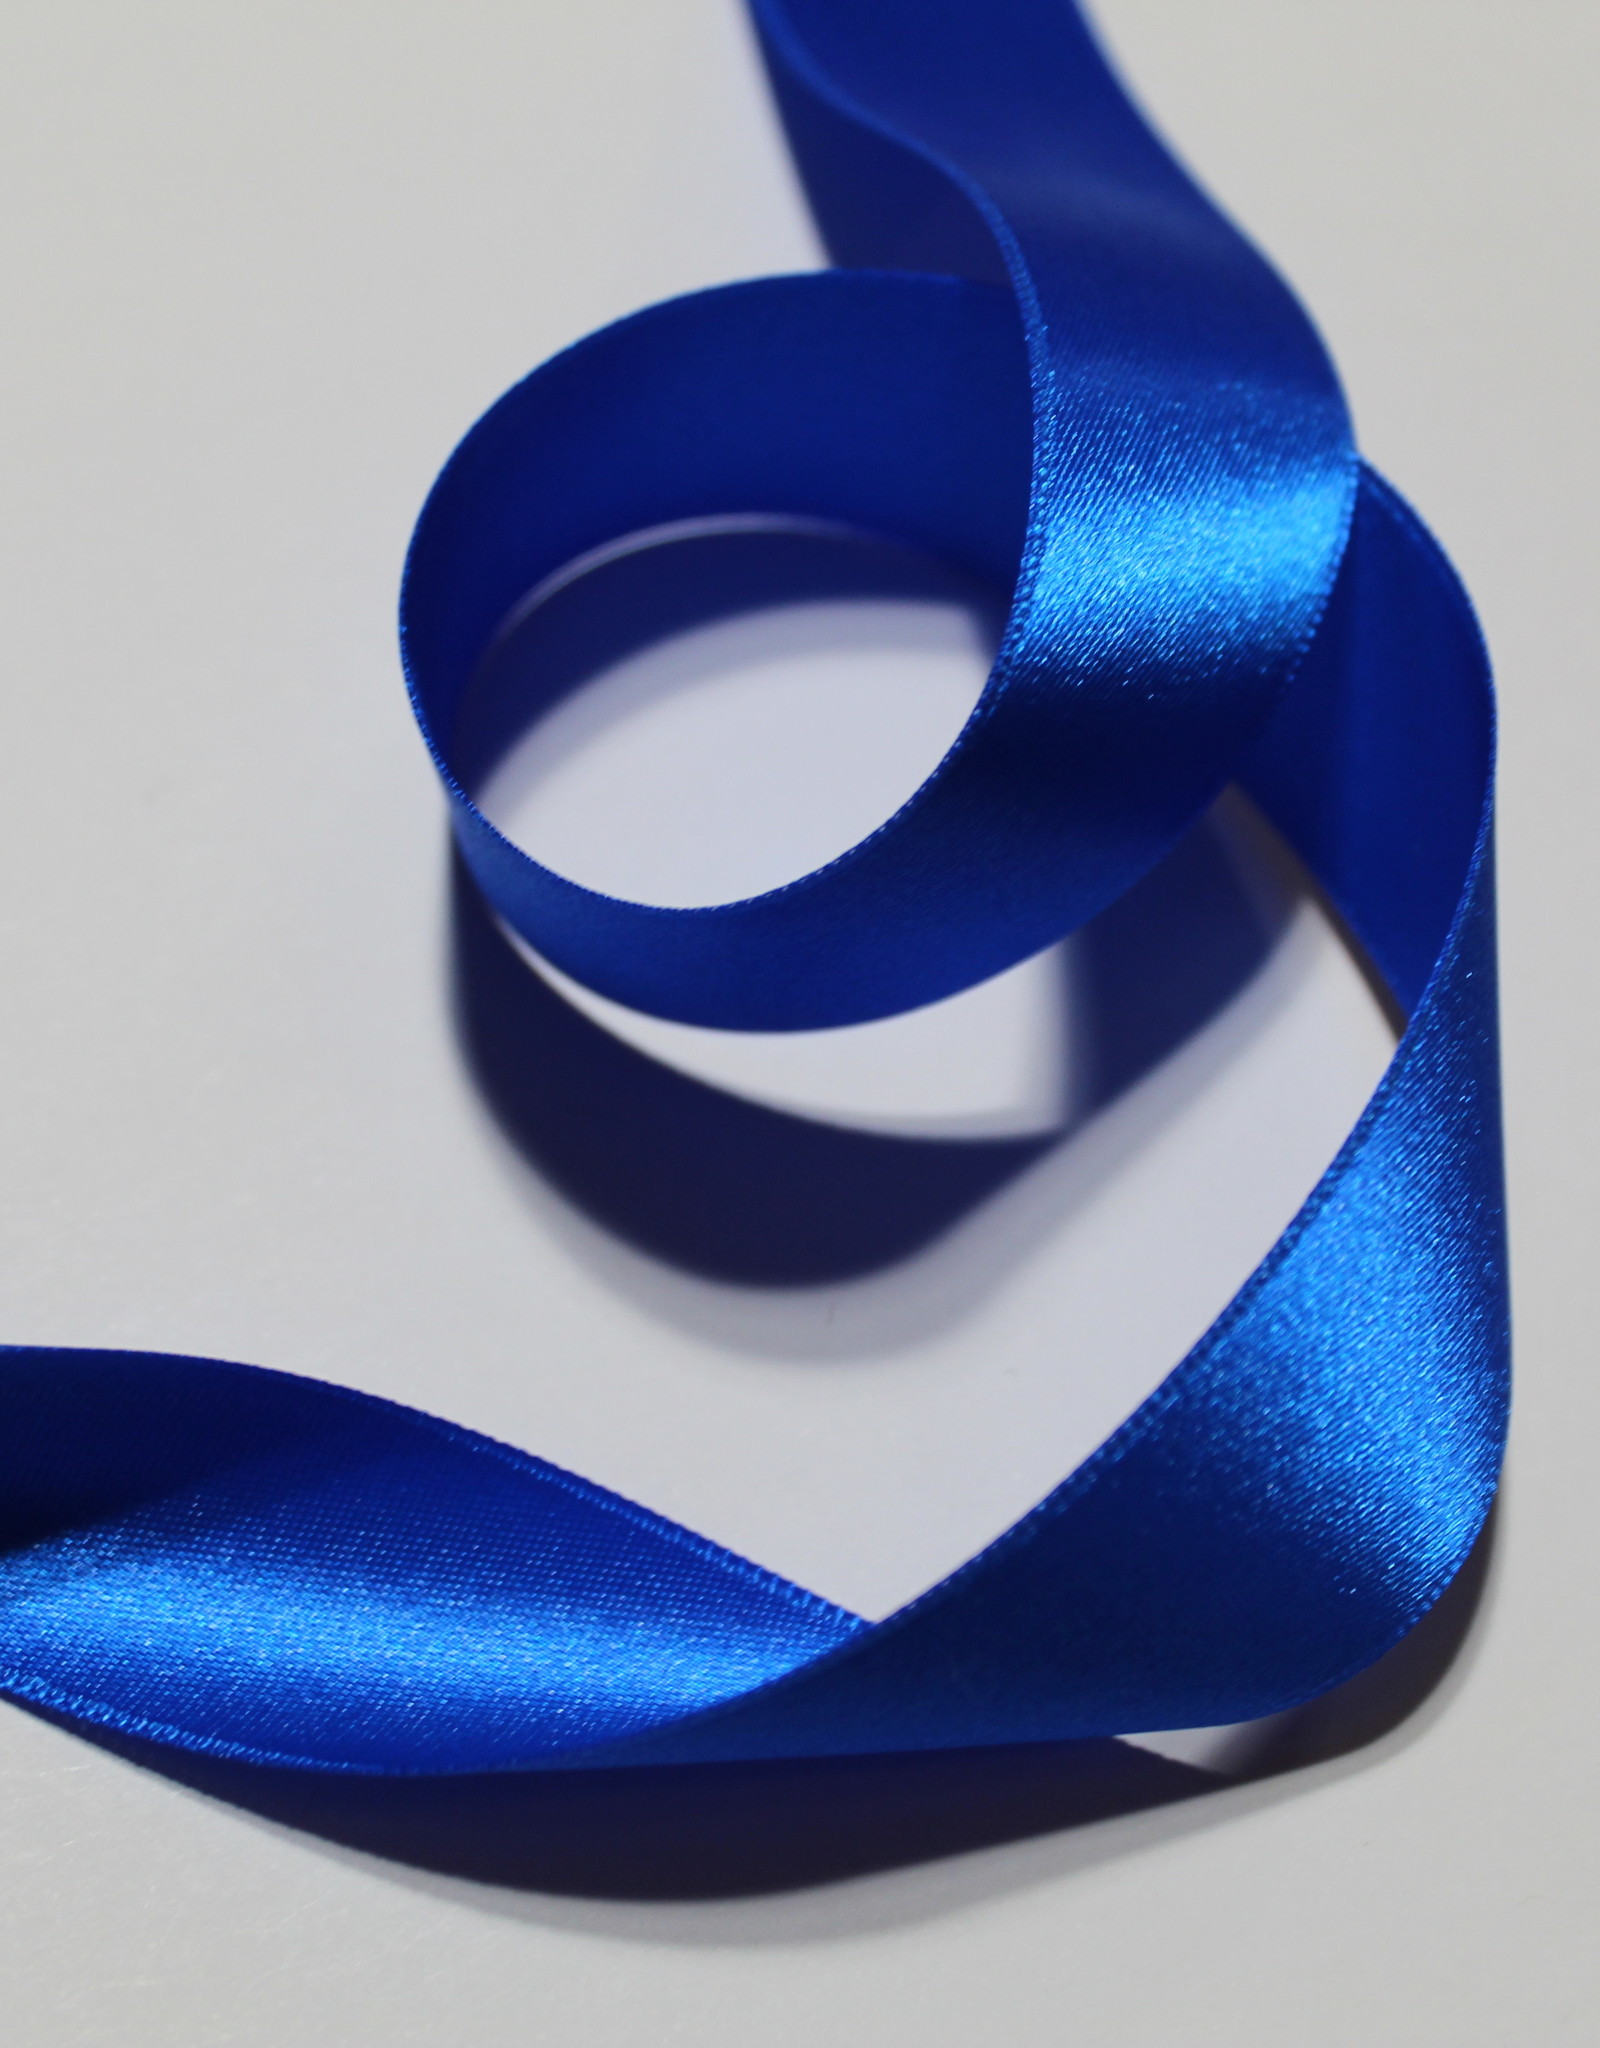 Dubbelzijdig satijnlint 25mm kobalt blauw col.215